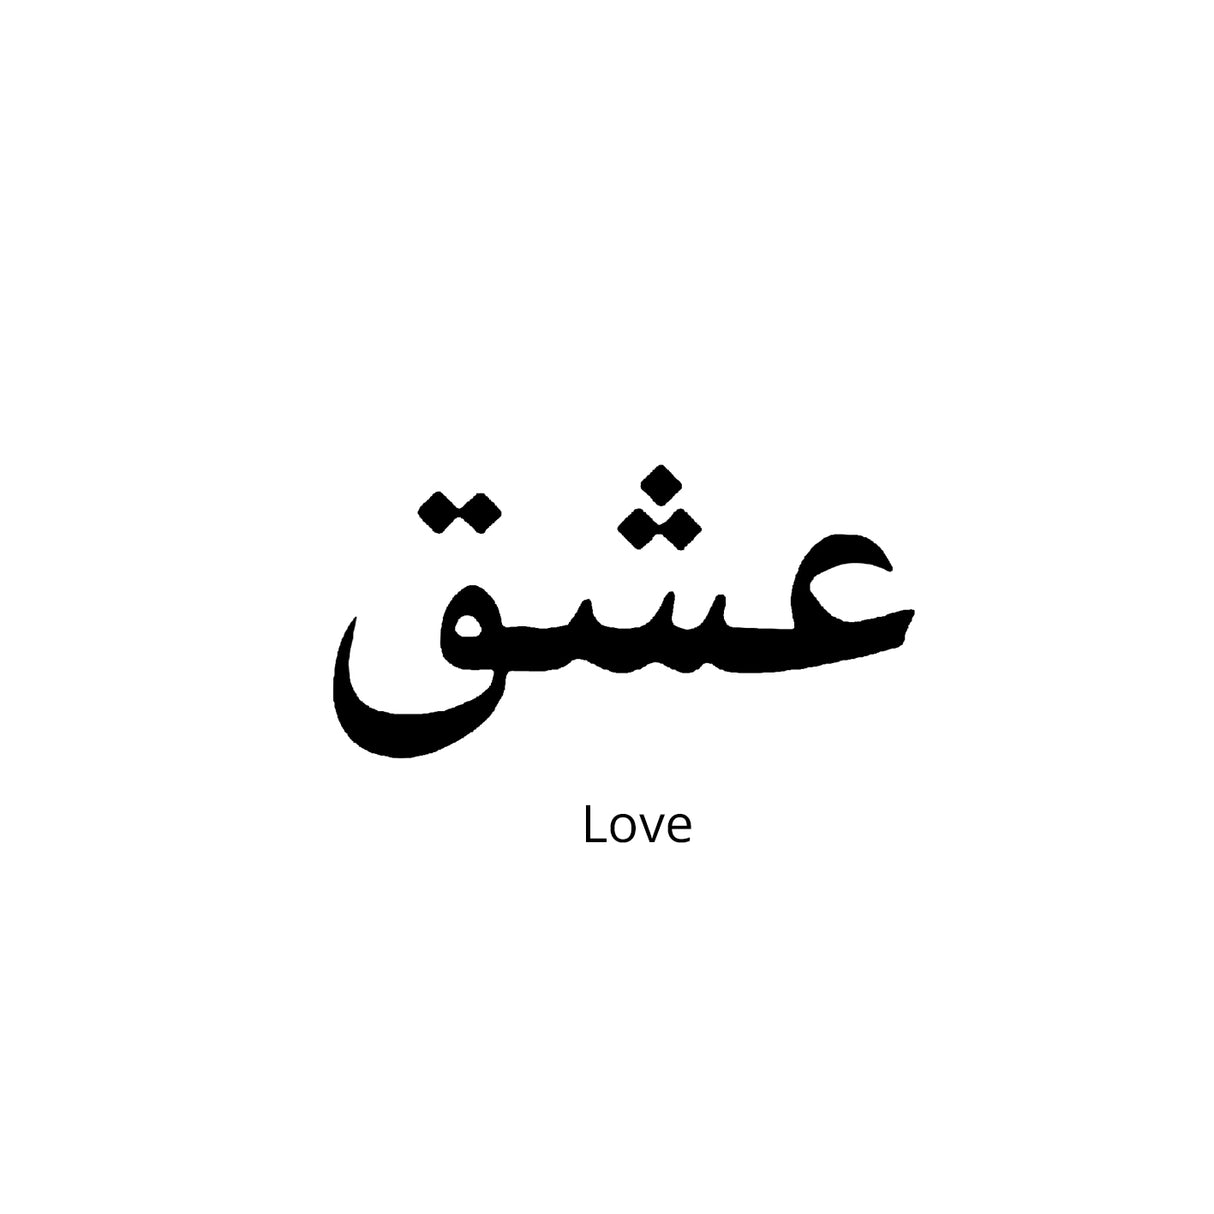 Love-Ishq-Urdu Semi Permanent Tattoo